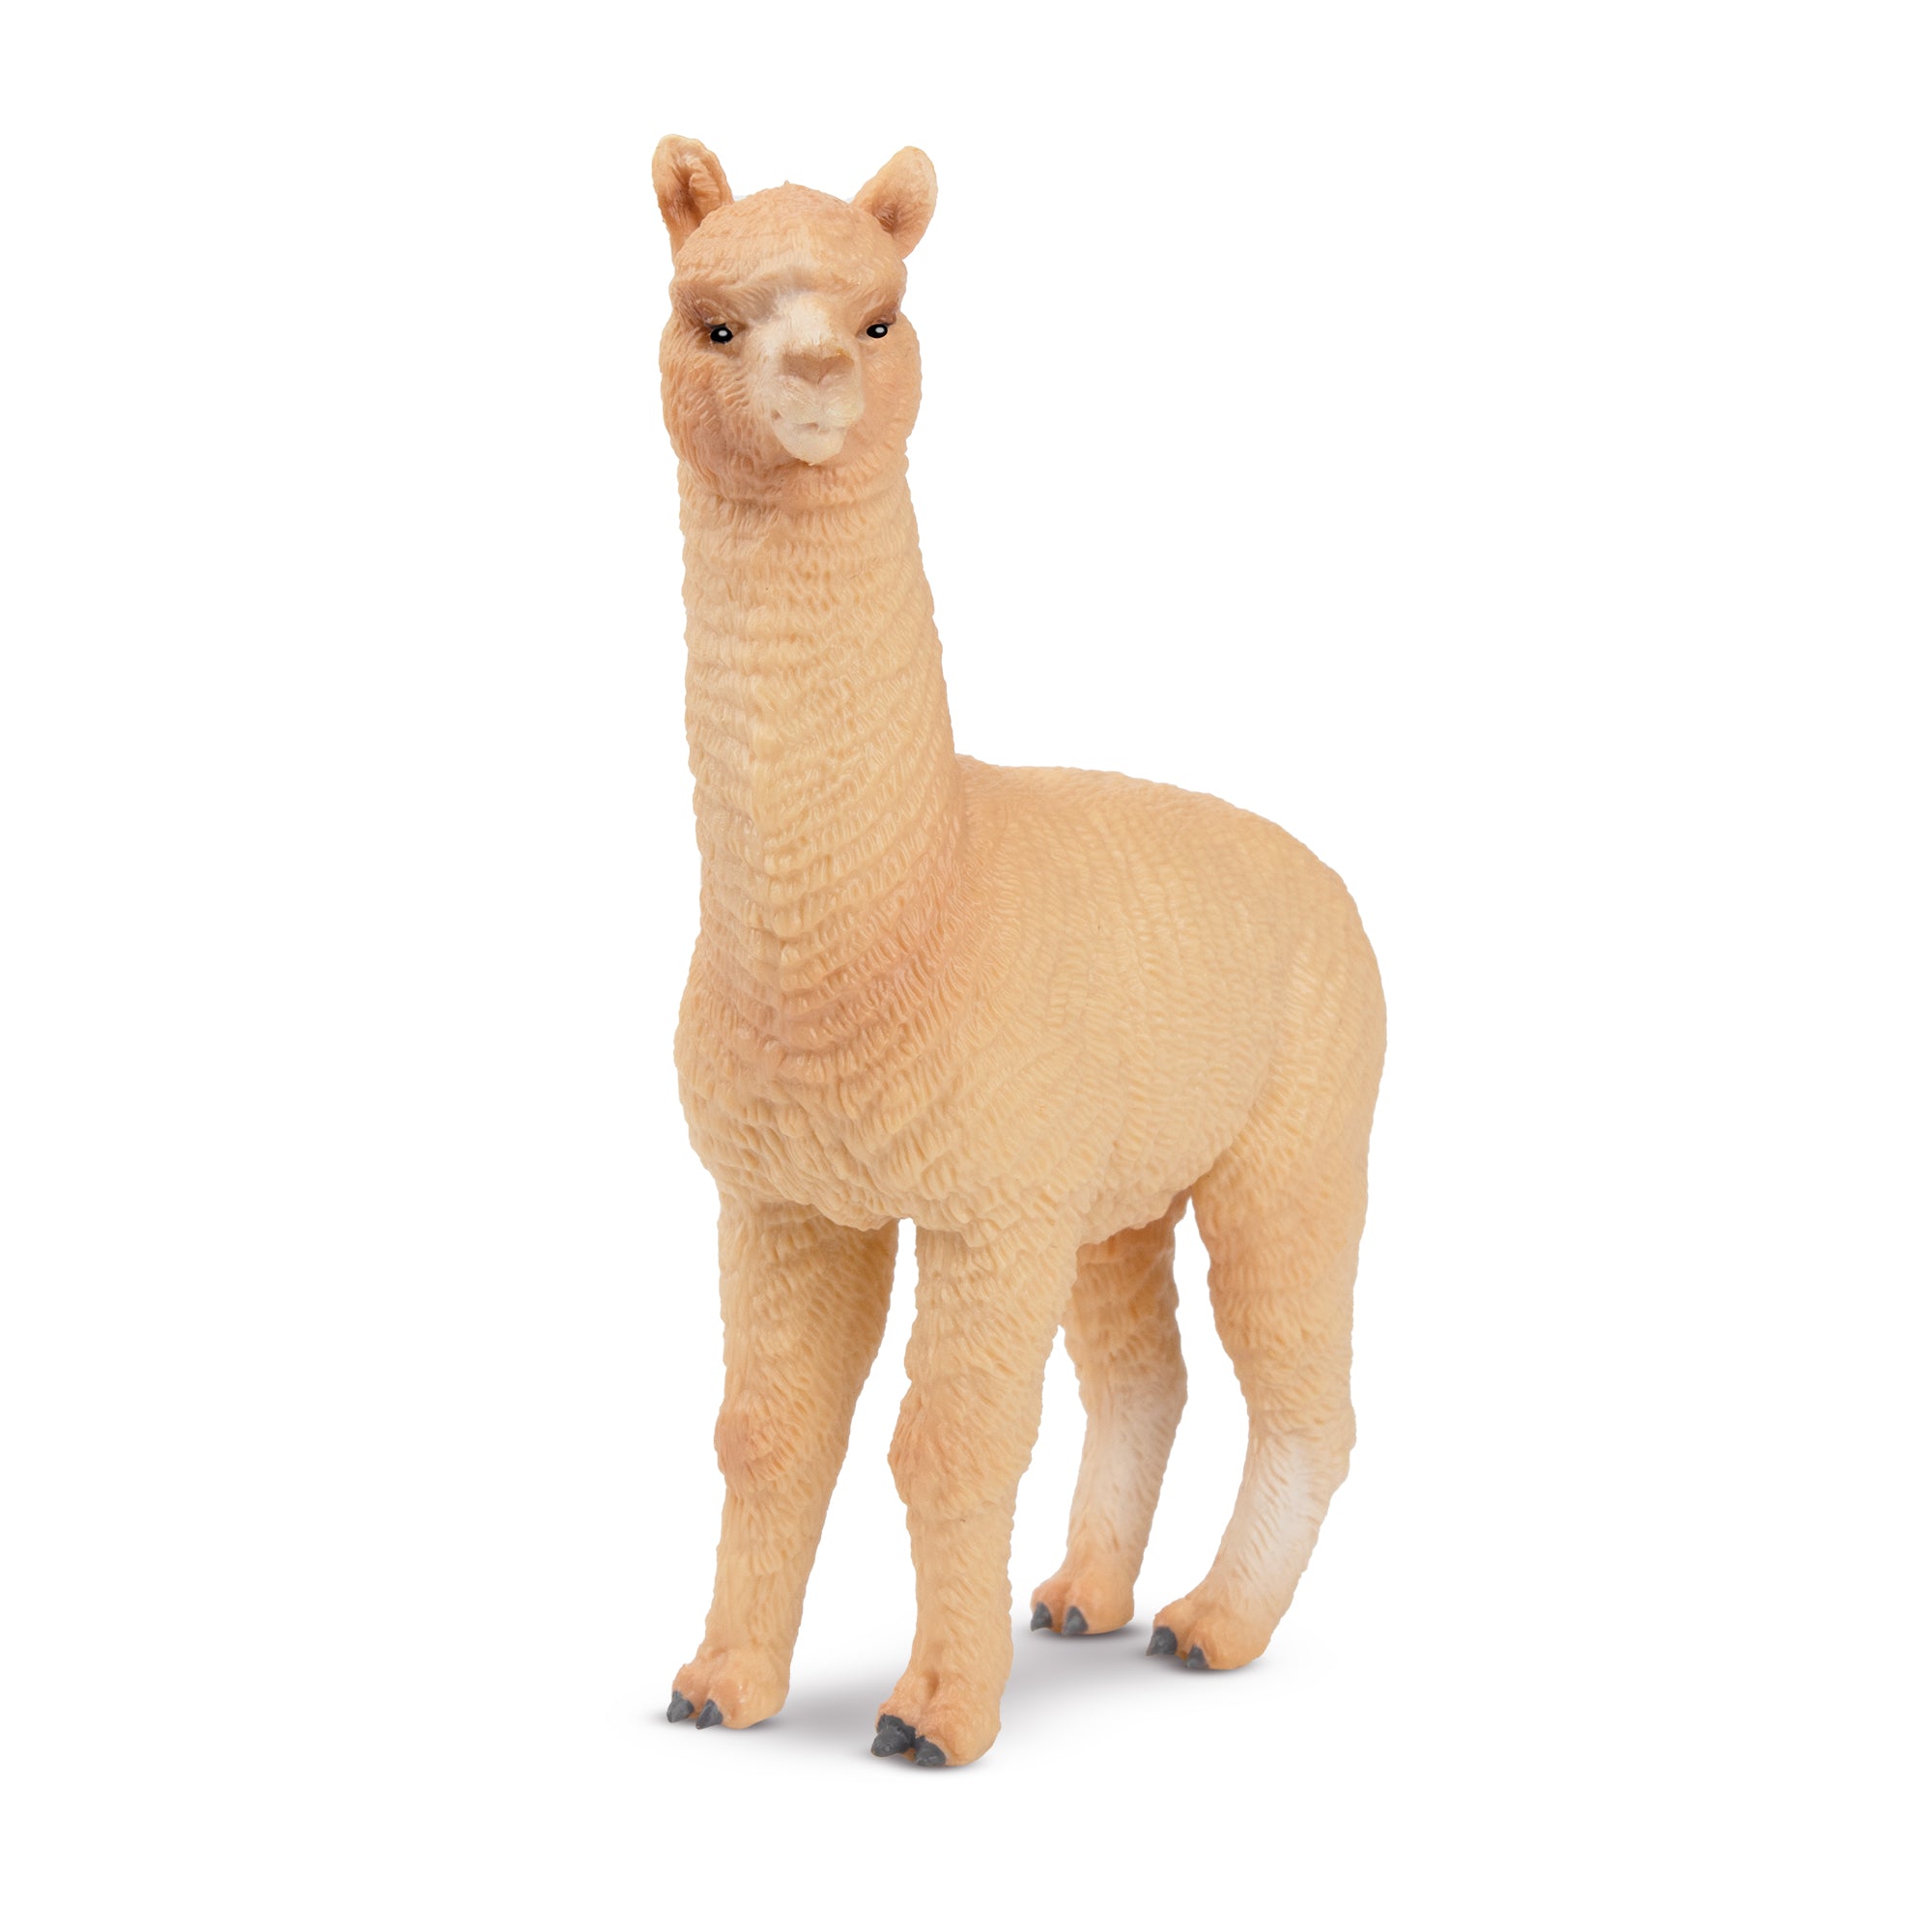 Toymany Male Alpaca Figurine Toy